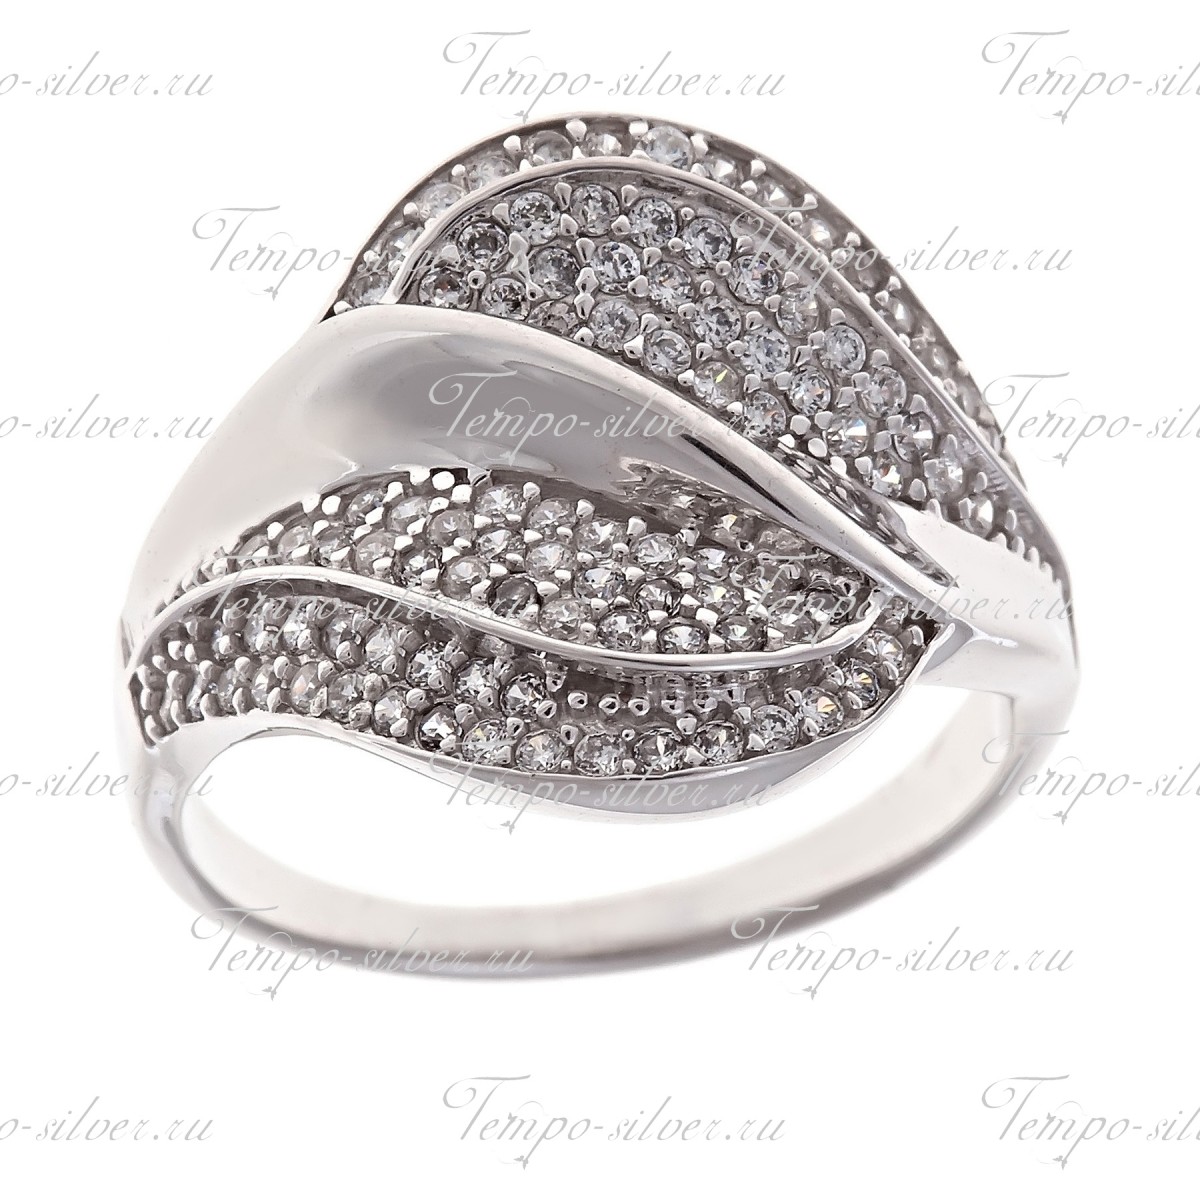 Кольцо из серебра широкой формы с волнообразными дорожками из белых камней 